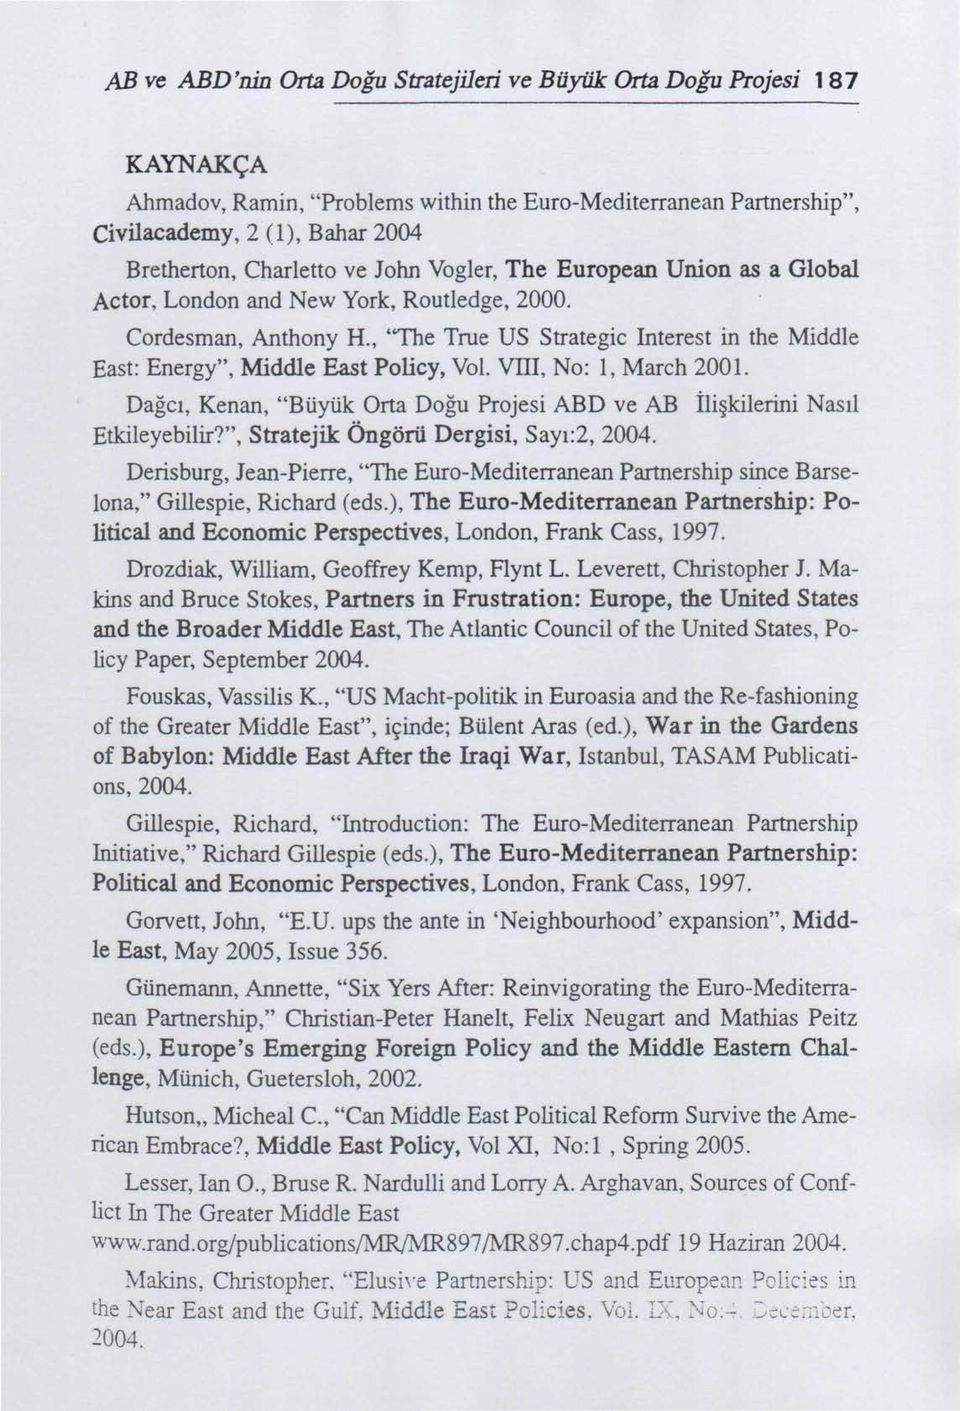 VIII, No: 1, March 2001. Dağcı, Kenan, "Büyük Orta Doğu Projesi ABD ve AB İlişkilerini Nasıl Etkileyebilir?", Stratejik Öngörü Dergisi, Sayı:2, 2004.